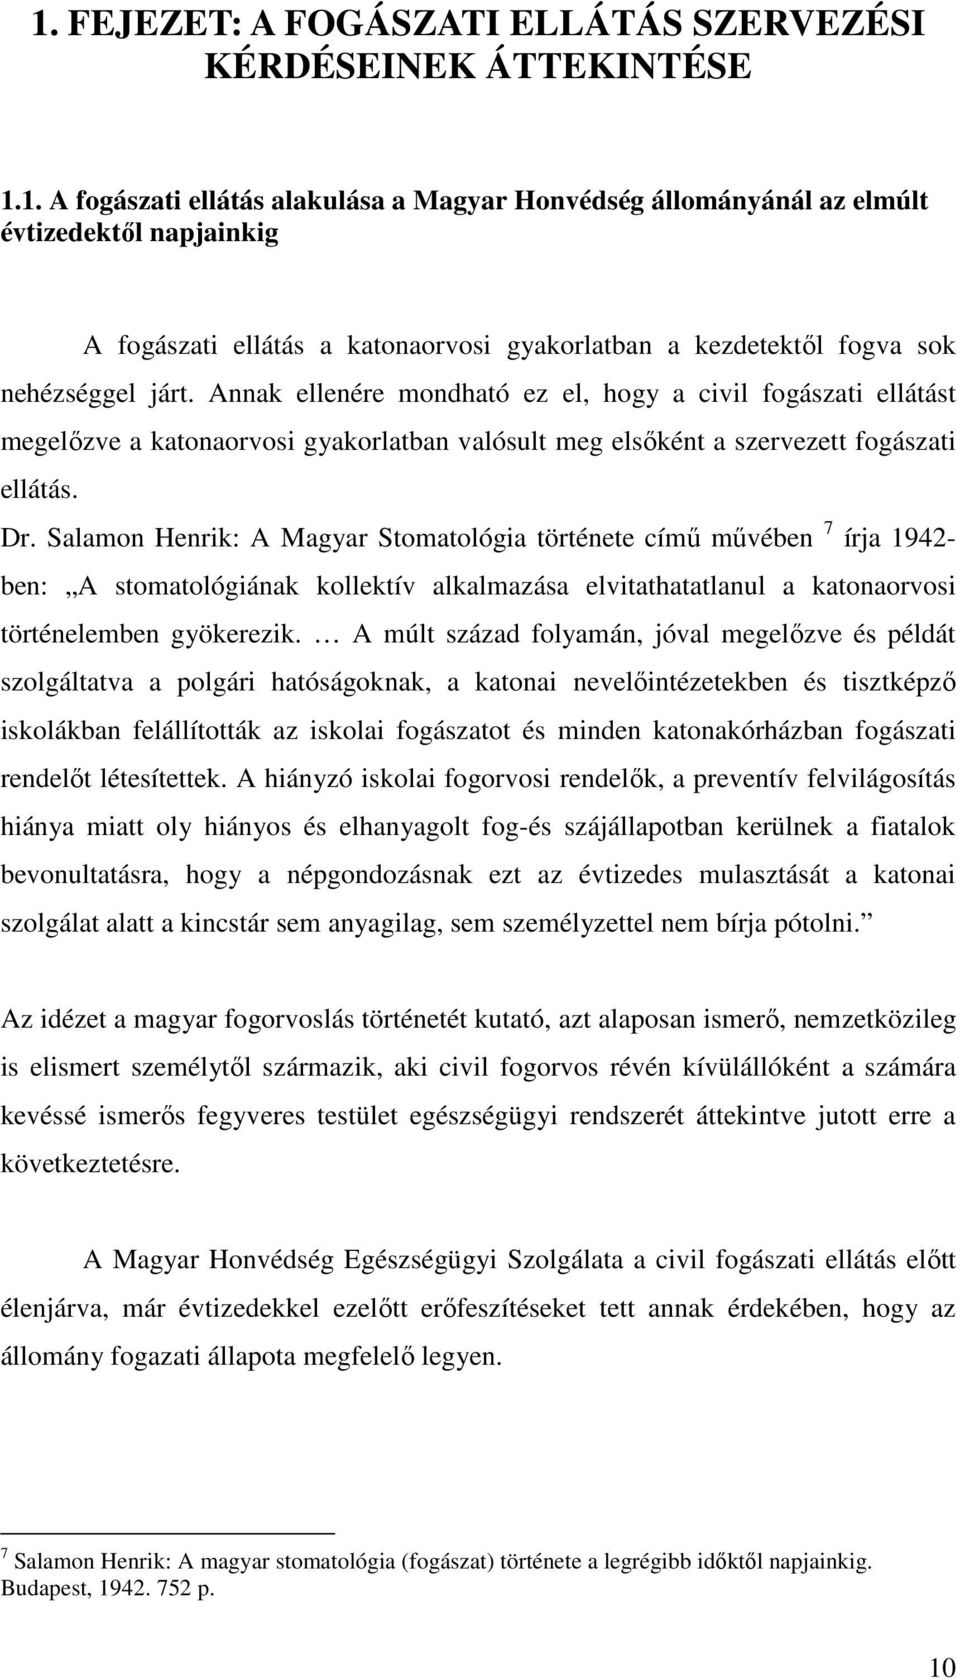 Salamon Henrik: A Magyar Stomatológia története címő mővében 7 írja 1942- ben: A stomatológiának kollektív alkalmazása elvitathatatlanul a katonaorvosi történelemben gyökerezik.